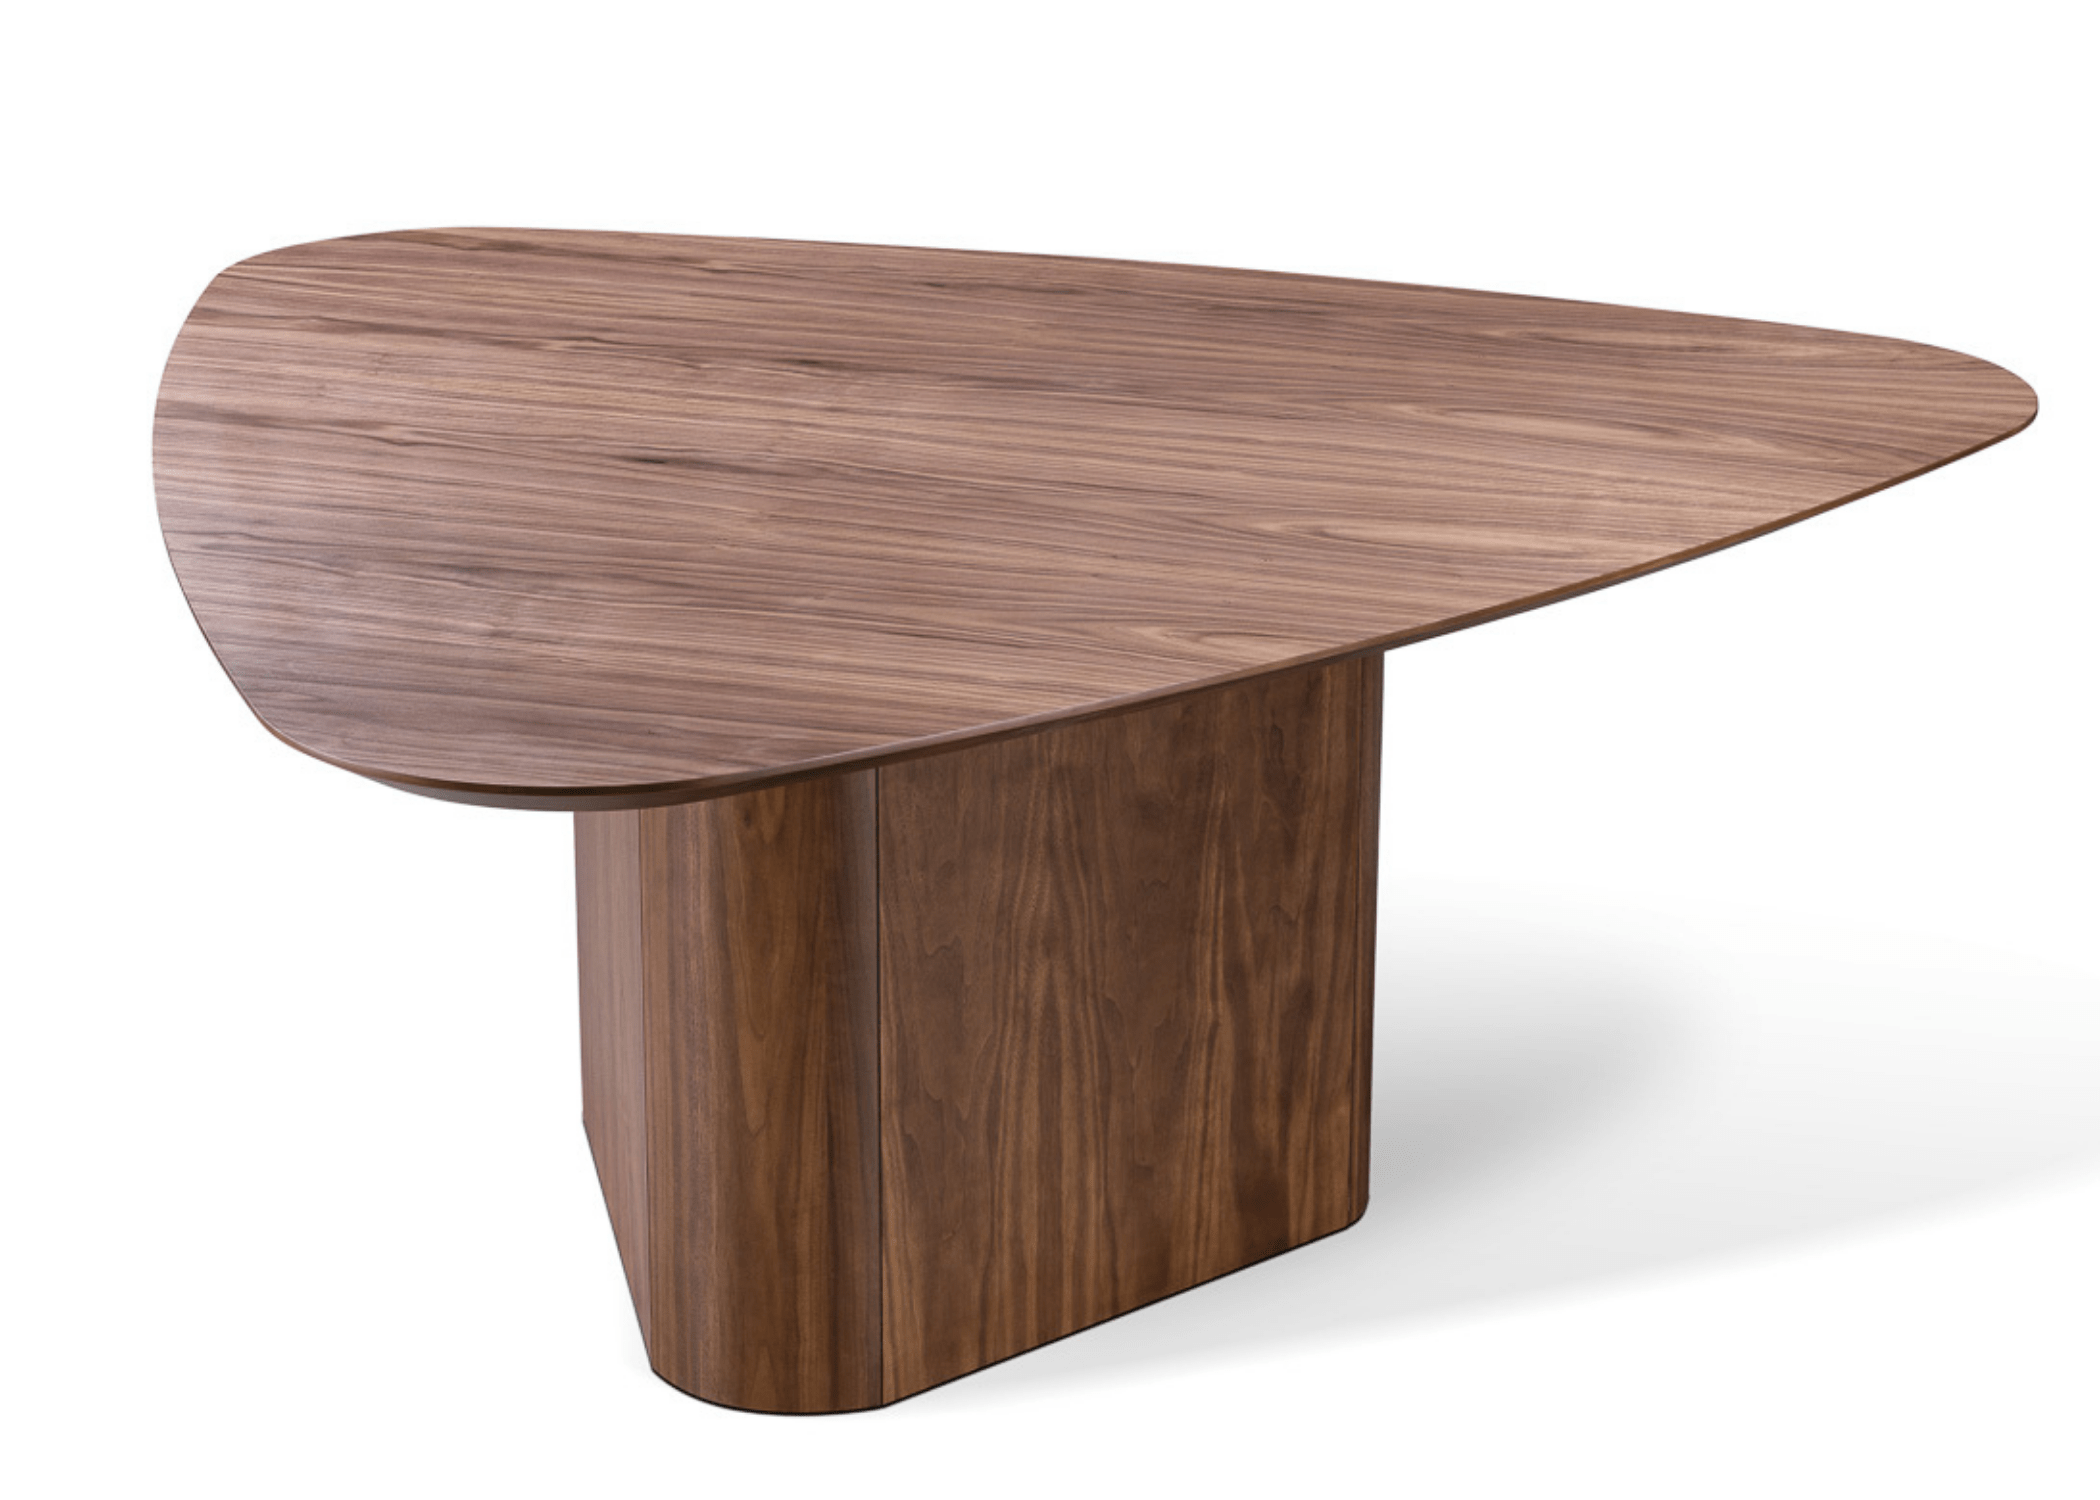 A mesa de jantar Simple é uma peça de mobiliário que destaca a beleza da simplicidade e da funcionalidade